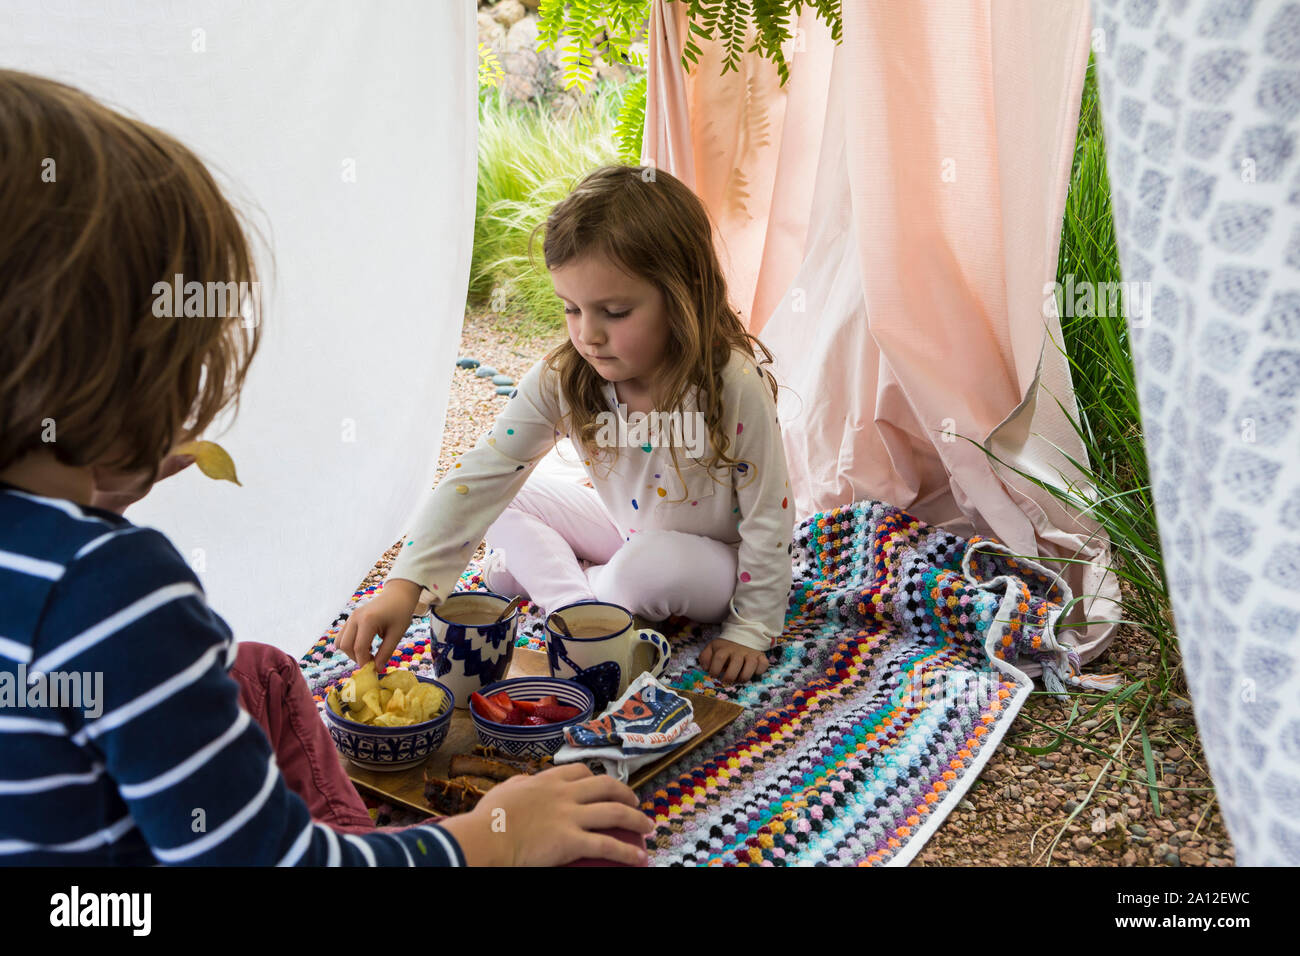 Jungen und Mädchen spielen im Freien improvisierten Zelt Stockfoto